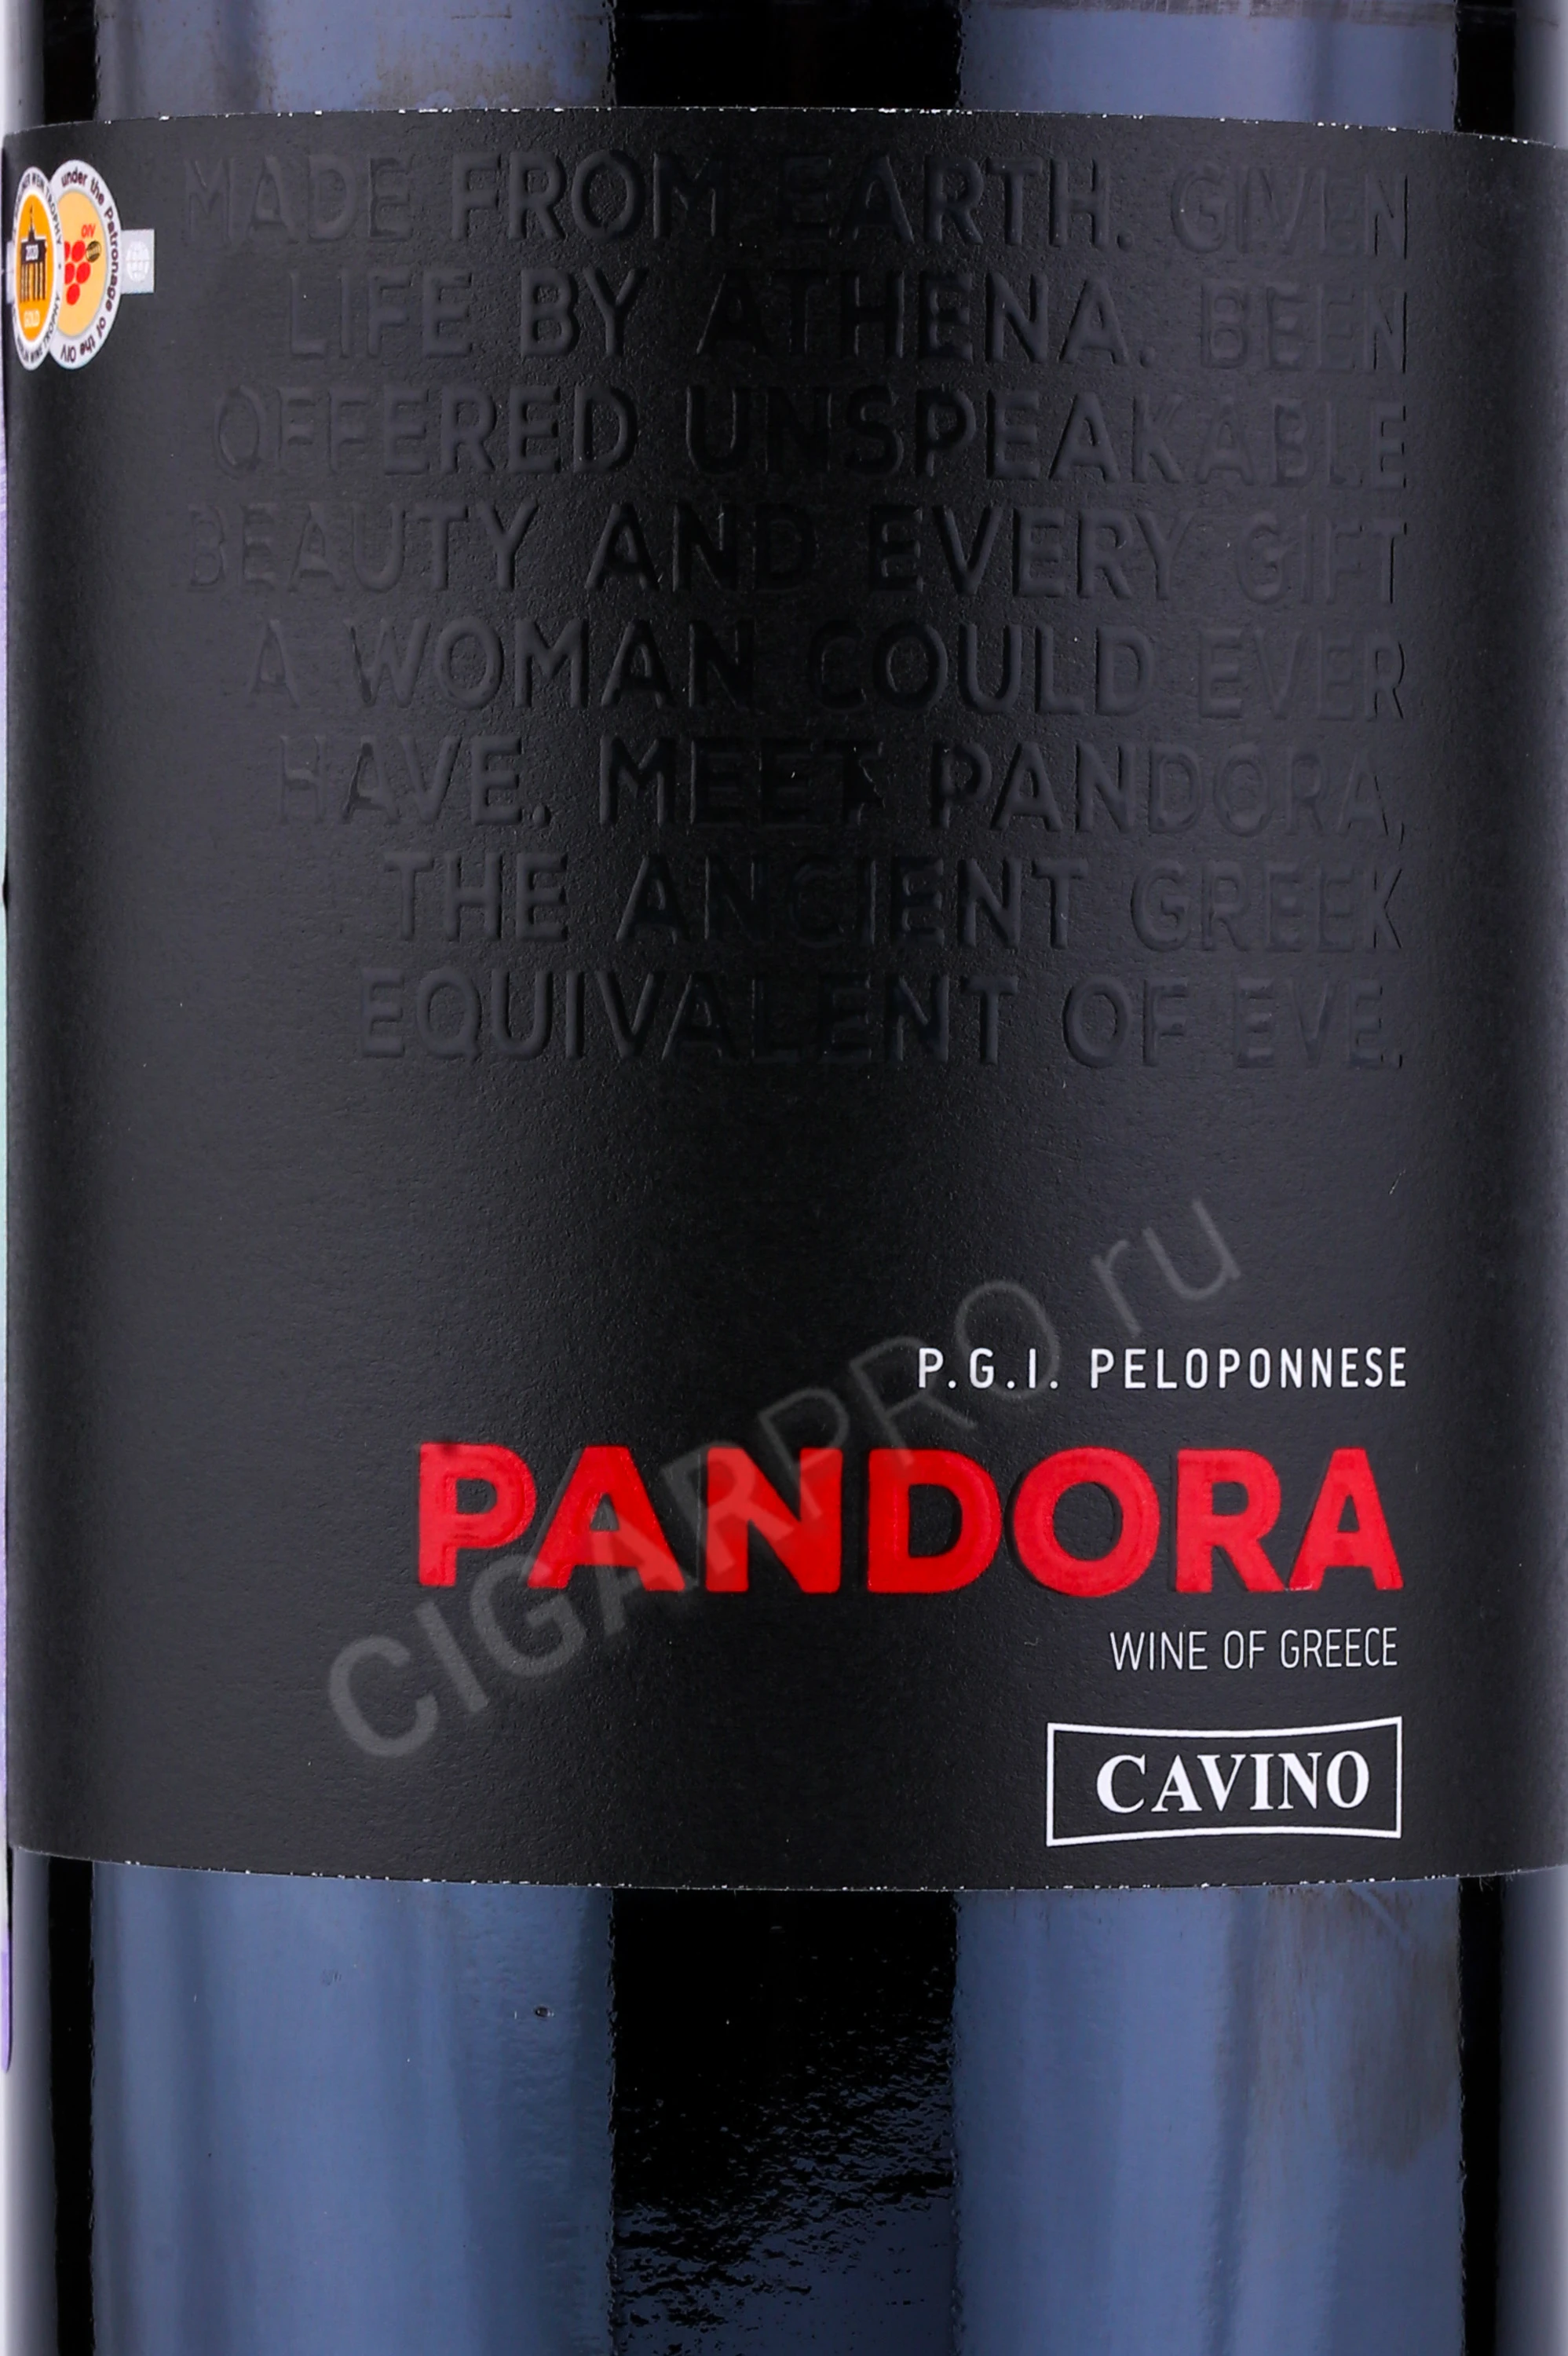 Пандора Вино Кавино купить цена 0.75л Cavino Pandora